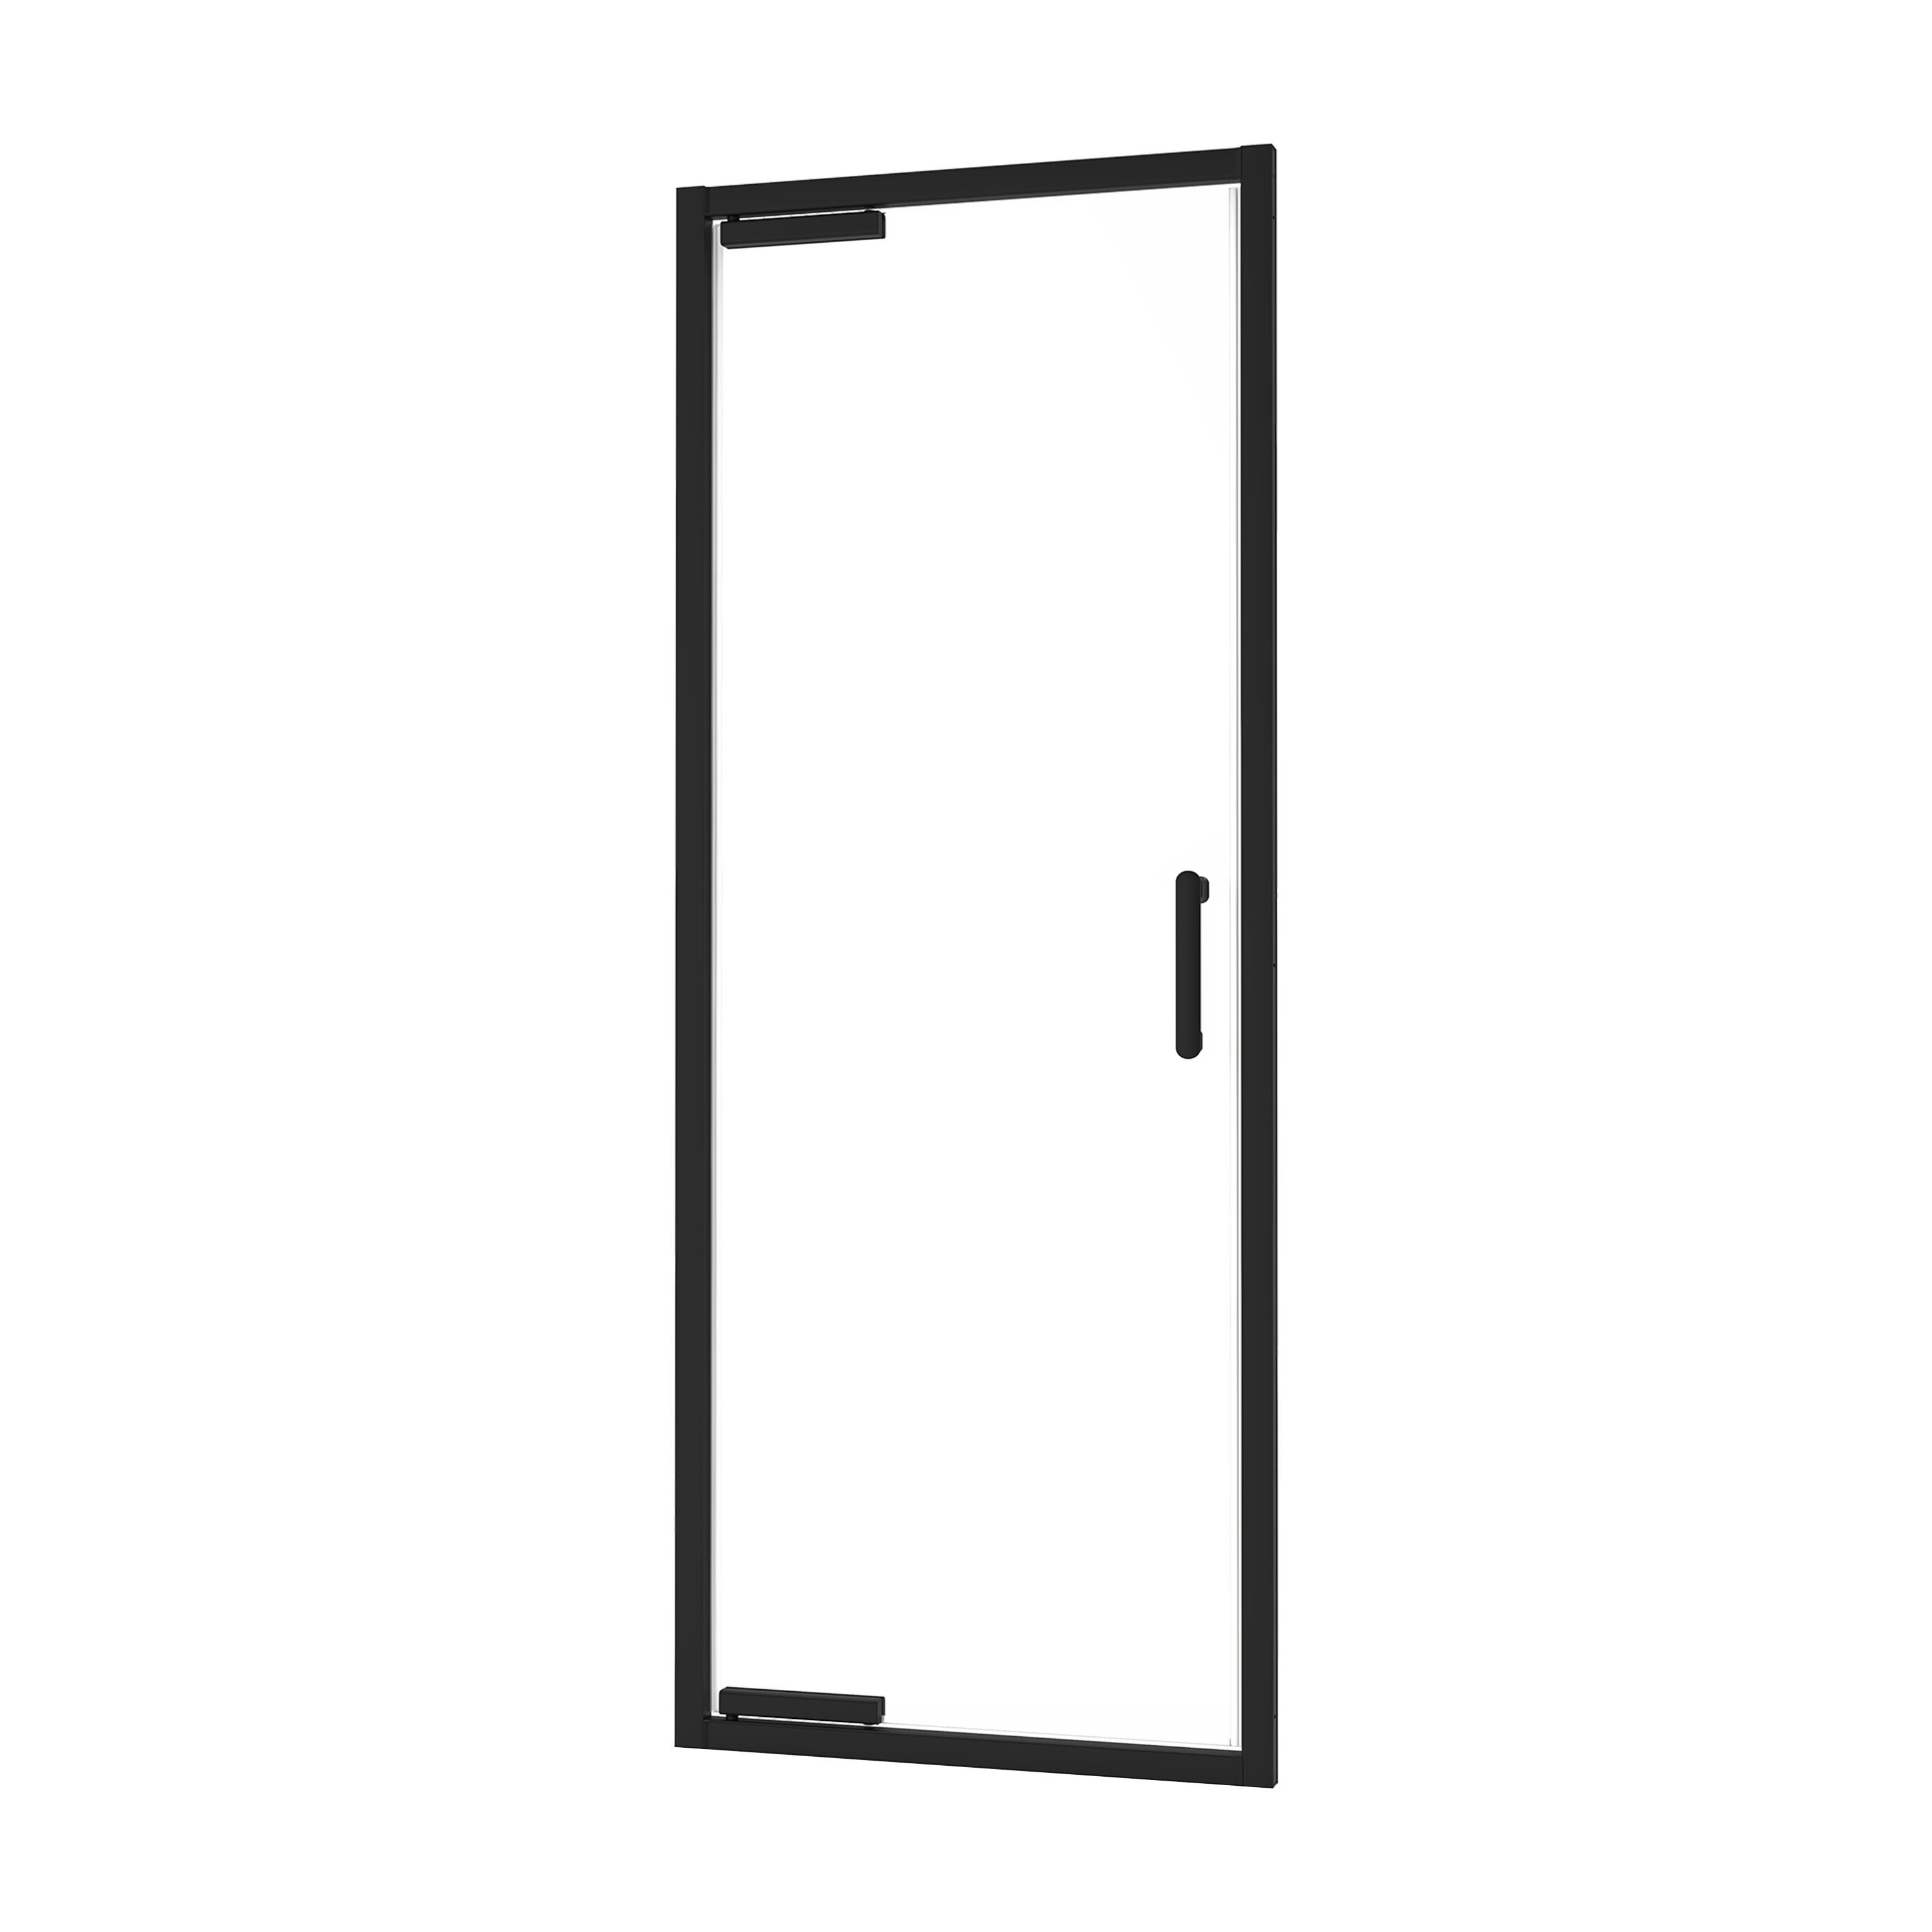 83631040 Комплект профилей и фурнитуры для распашной душевой двери 90 см цвет черный Easy STLM-0043062 SENSEA